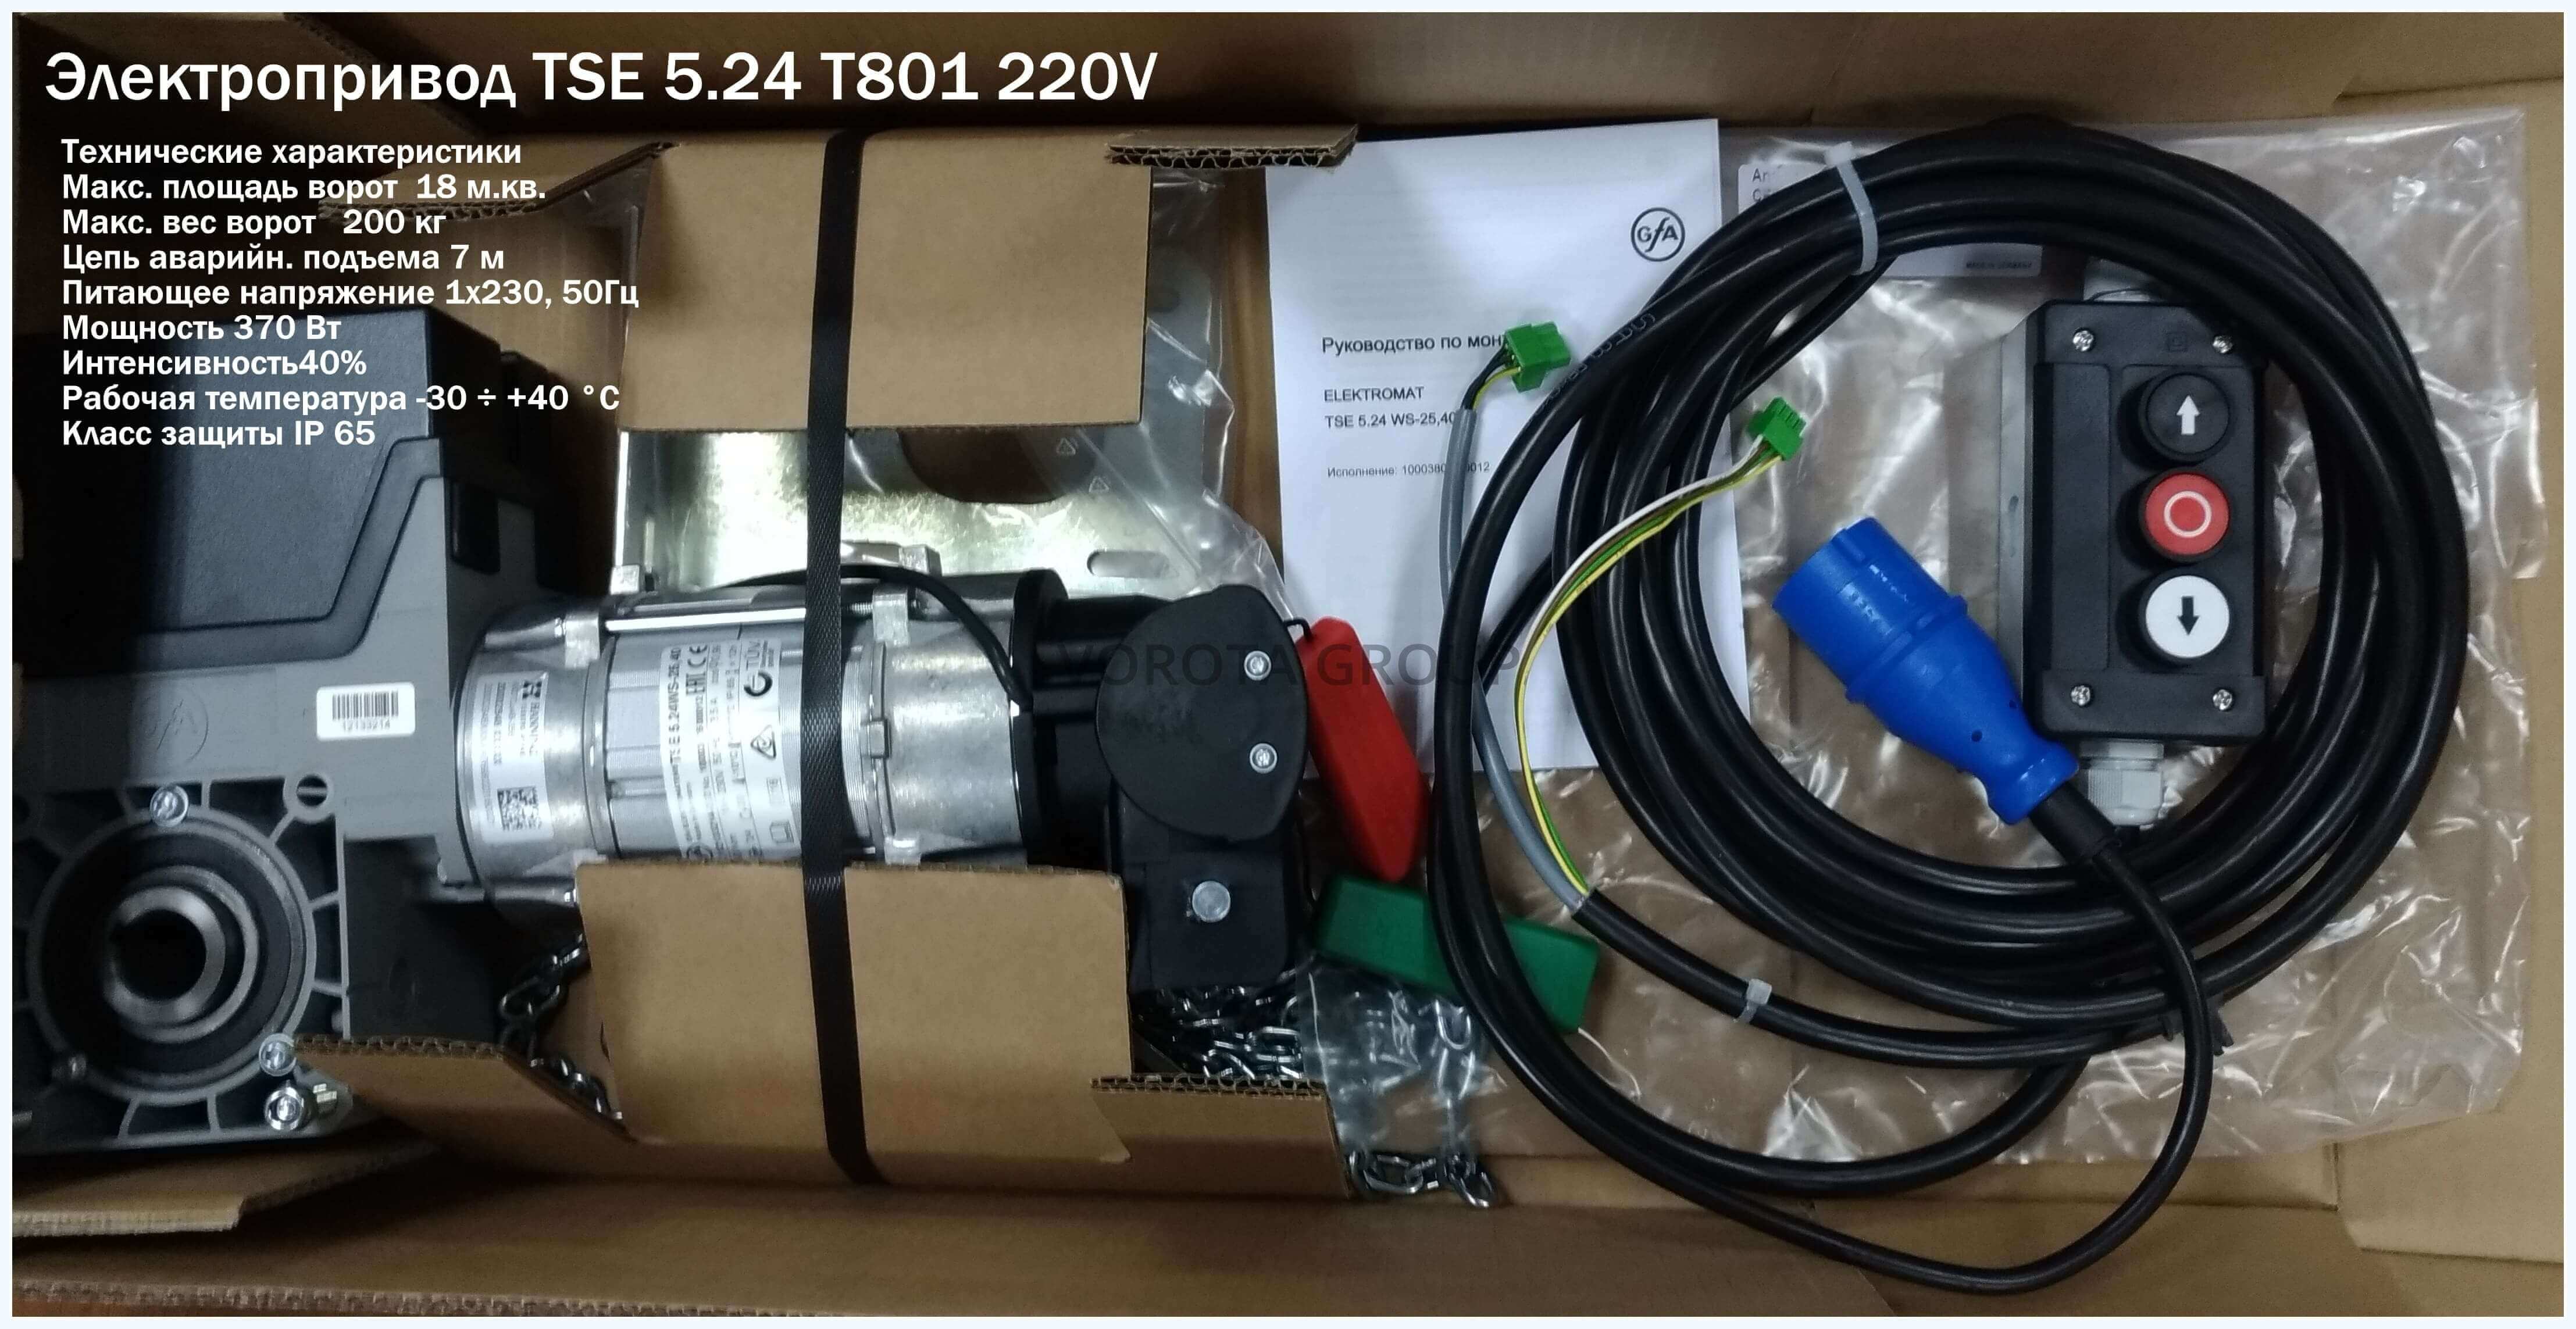 Электропривод TSE 5.24-25,40 WS NES SK T801 F 220V (вес ворот до 200 кг)